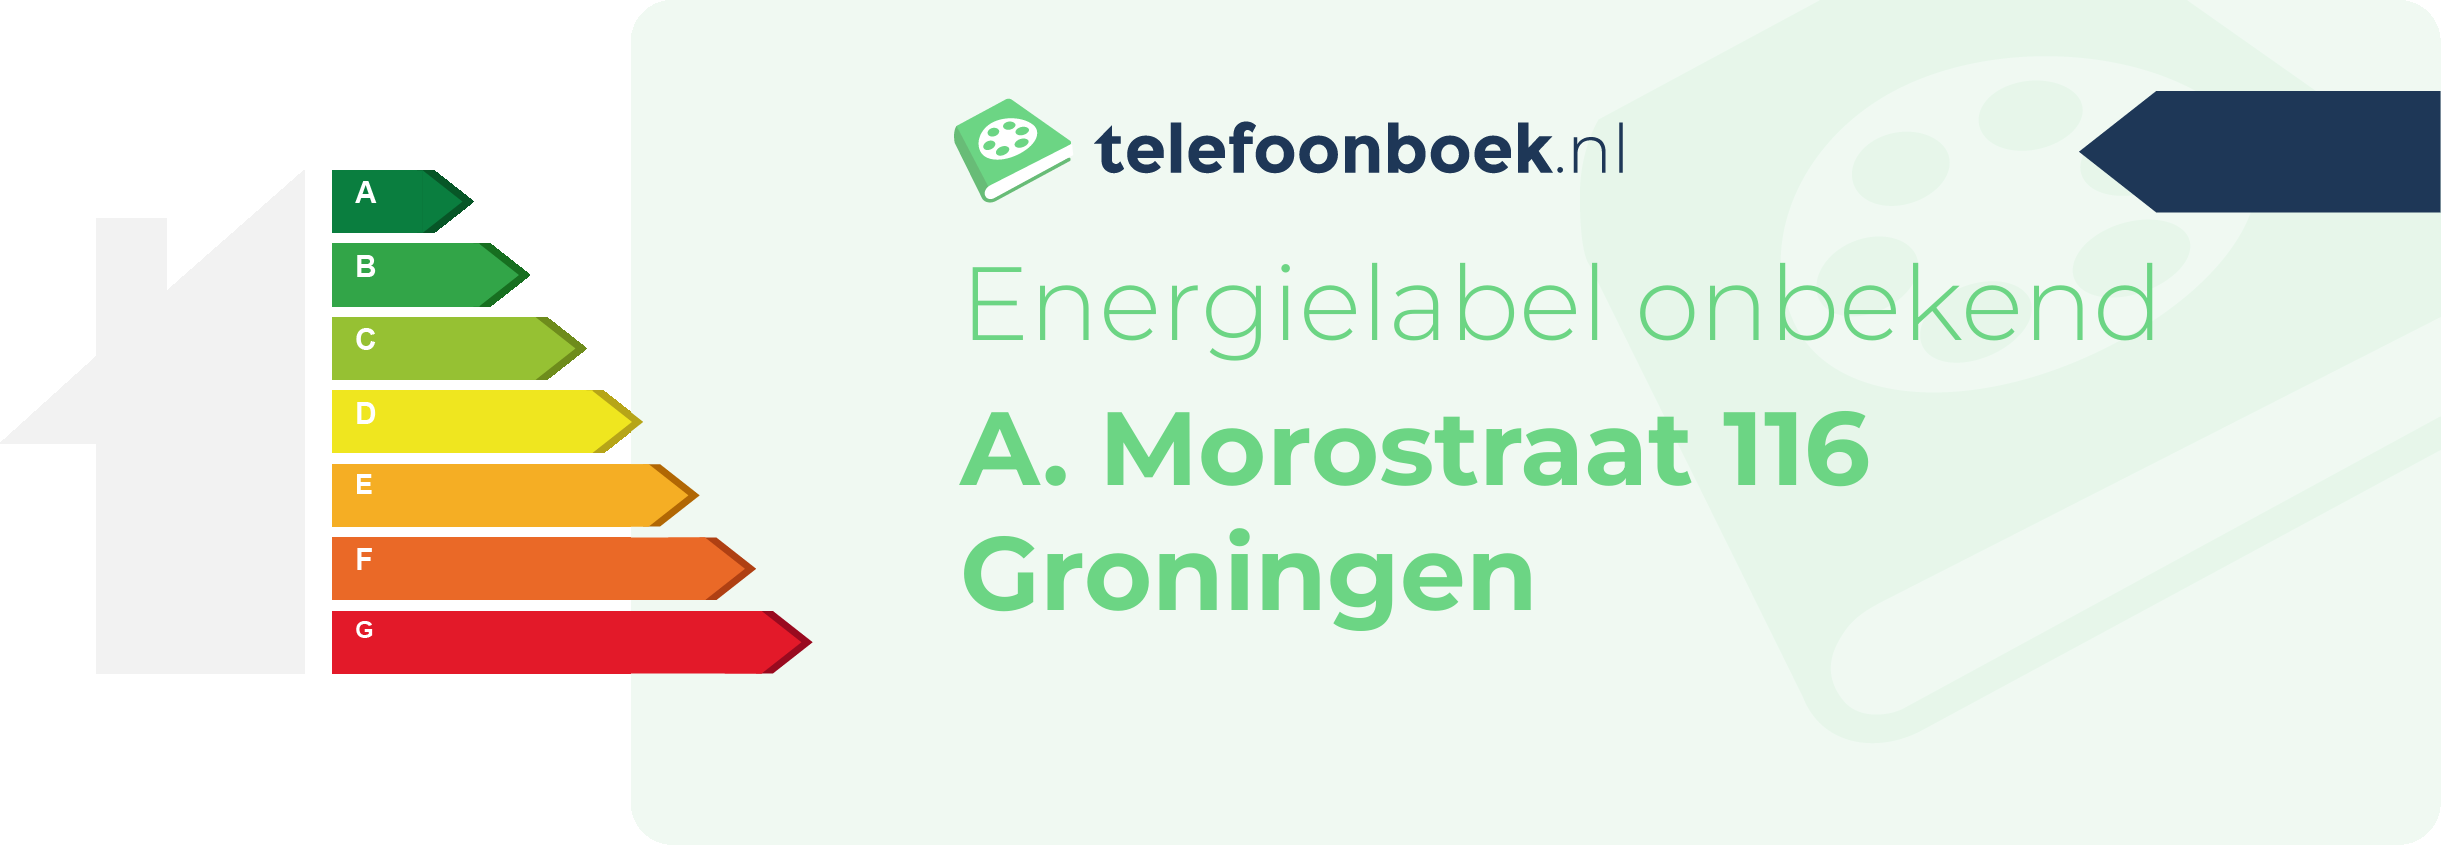 Energielabel A. Morostraat 116 Groningen